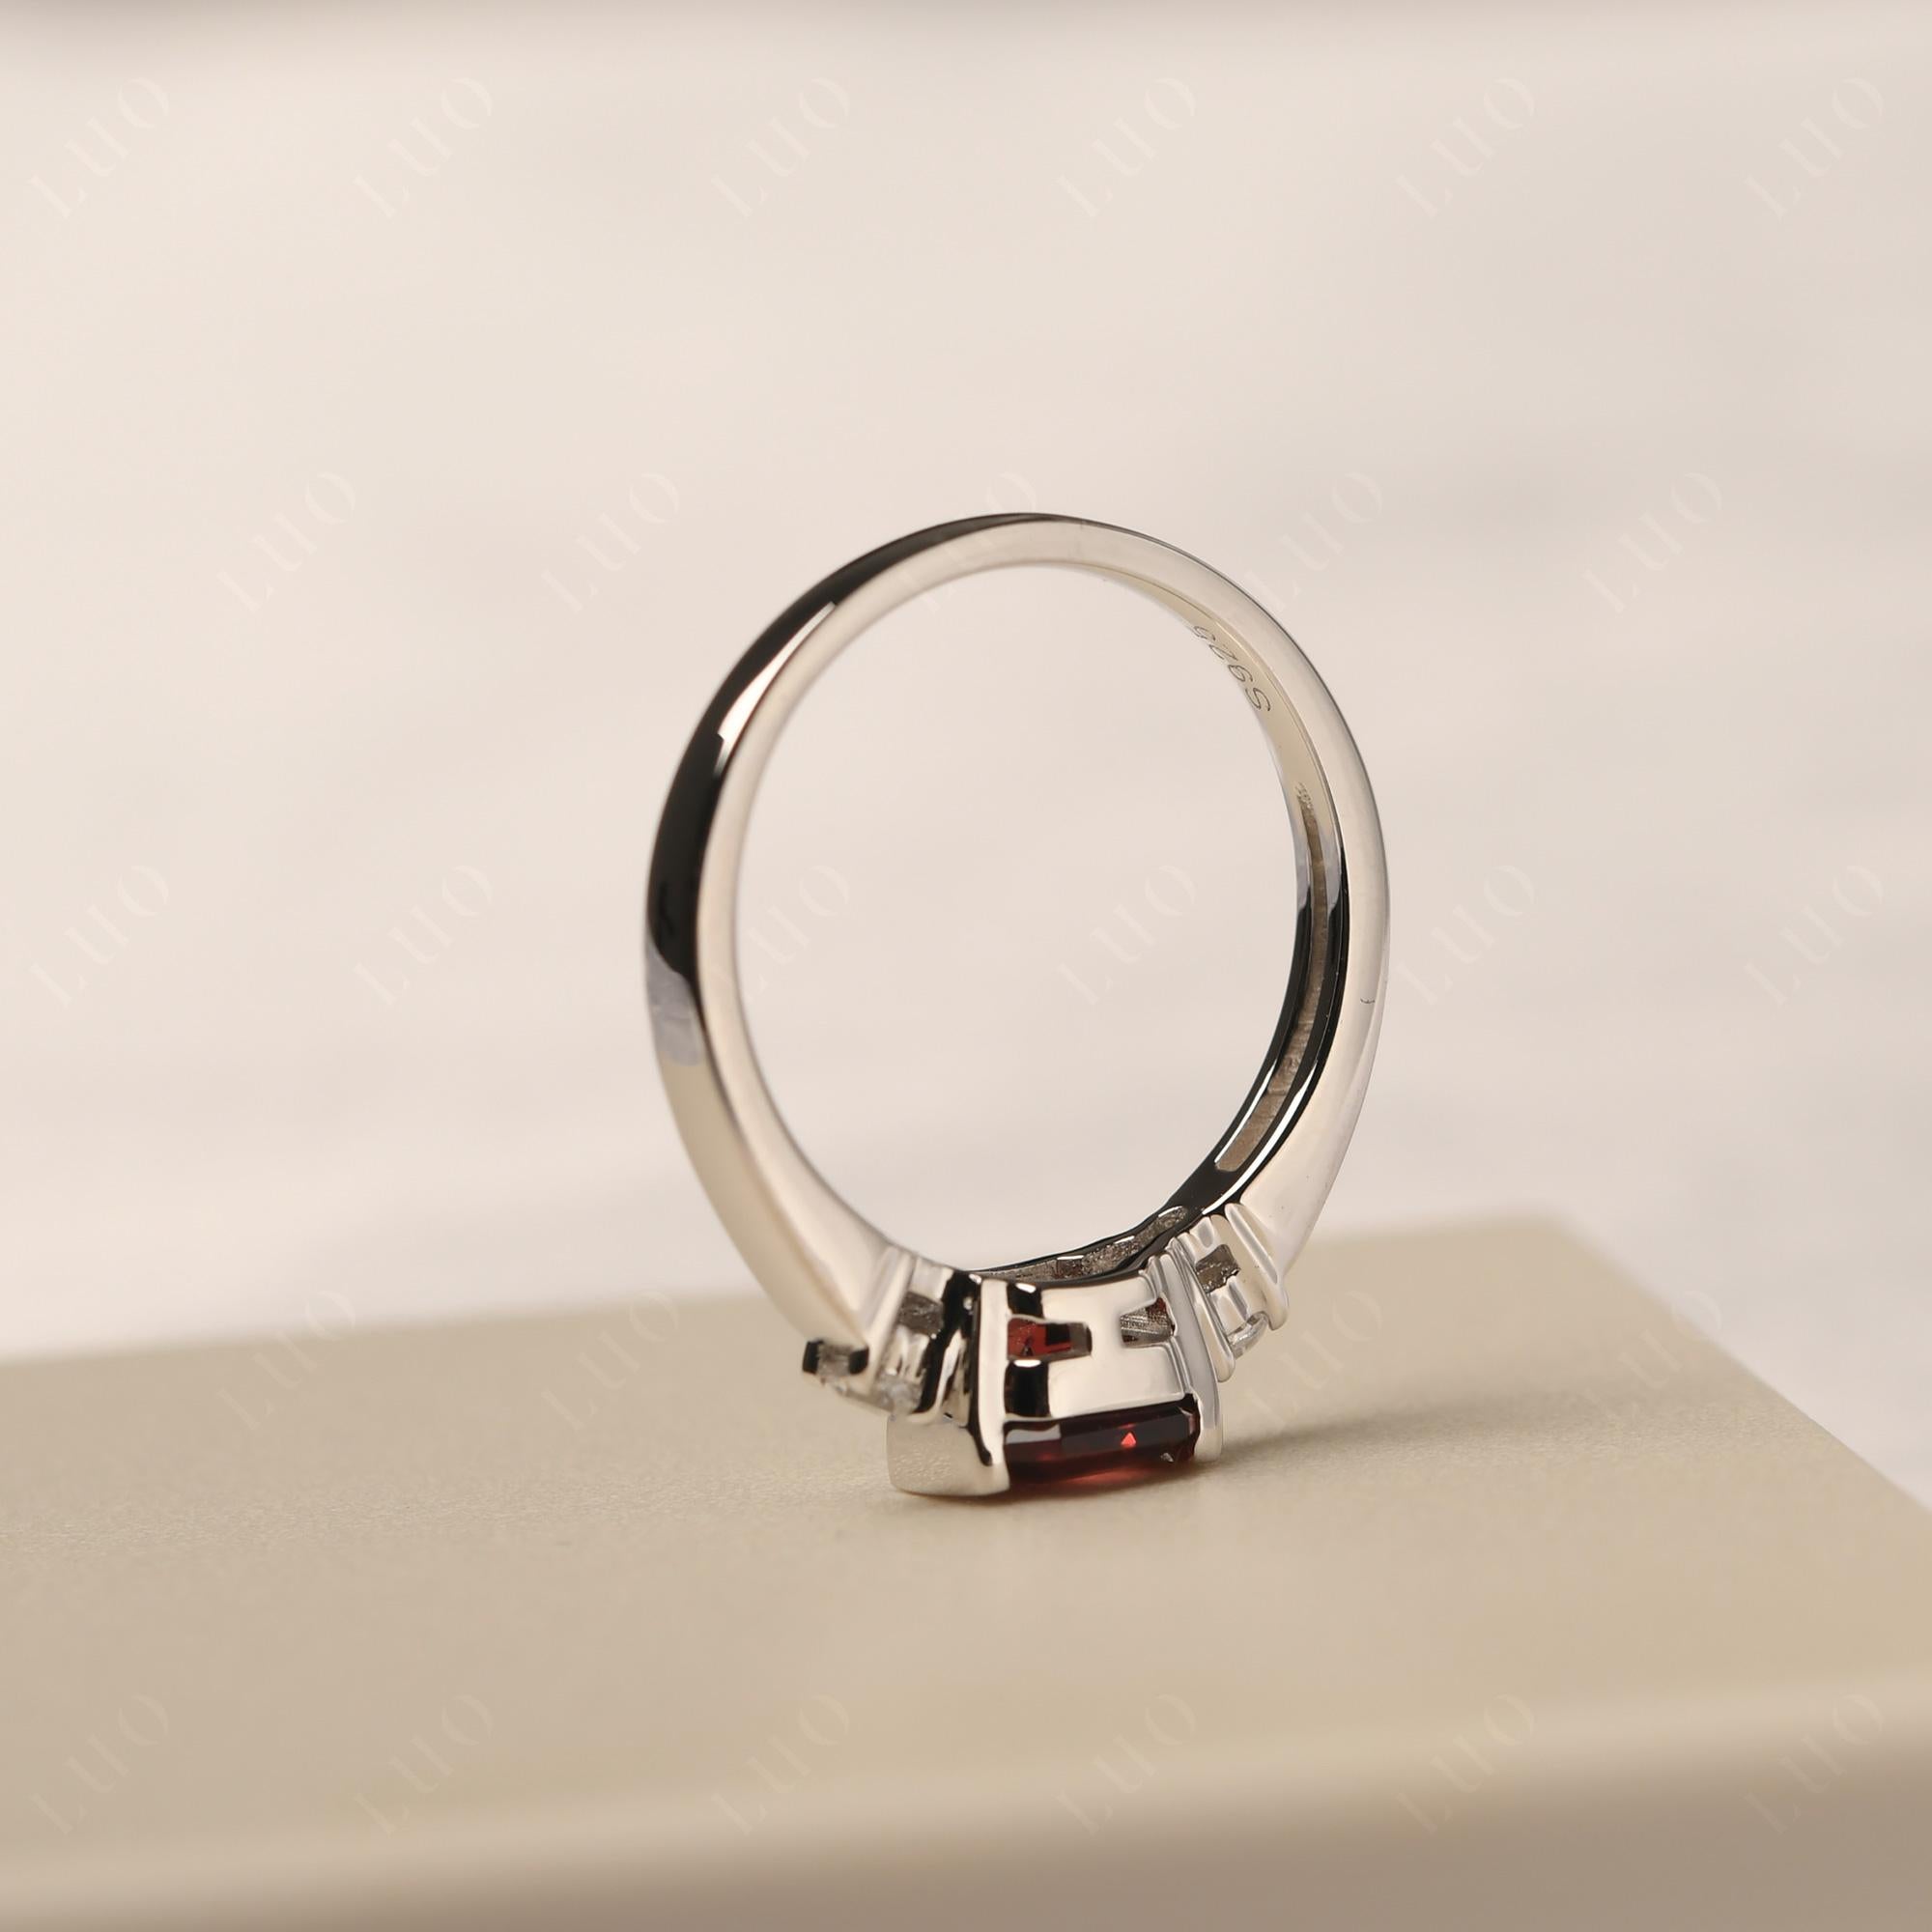 Garnet Half Bezel Set Asscher Cut Ring - LUO Jewelry